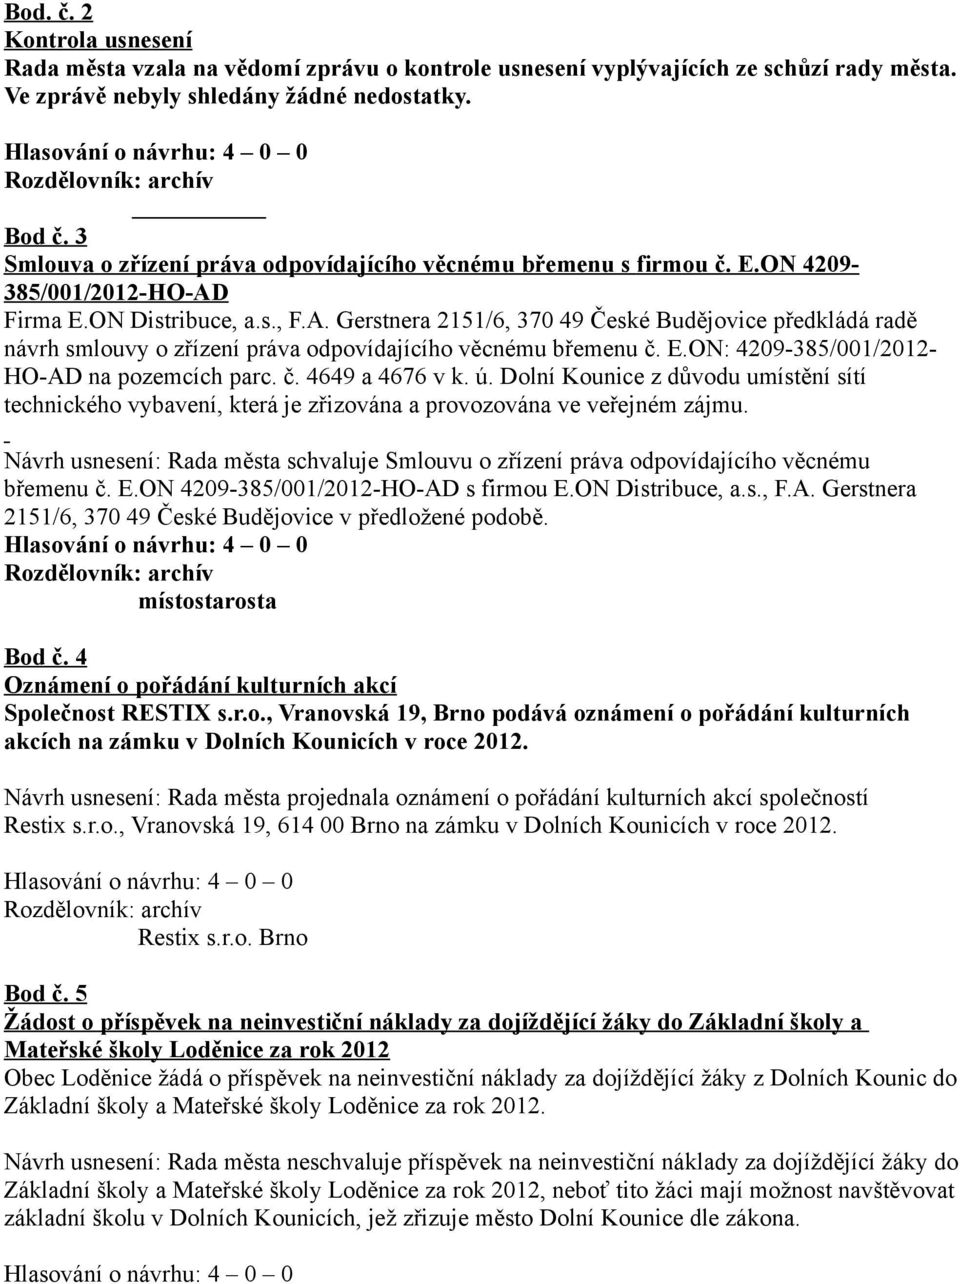 Firma E.ON Distribuce, a.s., F.A. Gerstnera 2151/6, 370 49 České Budějovice předkládá radě návrh smlouvy o zřízení práva odpovídajícího věcnému břemenu č. E.ON: 4209-385/001/2012- HO-AD na pozemcích parc.